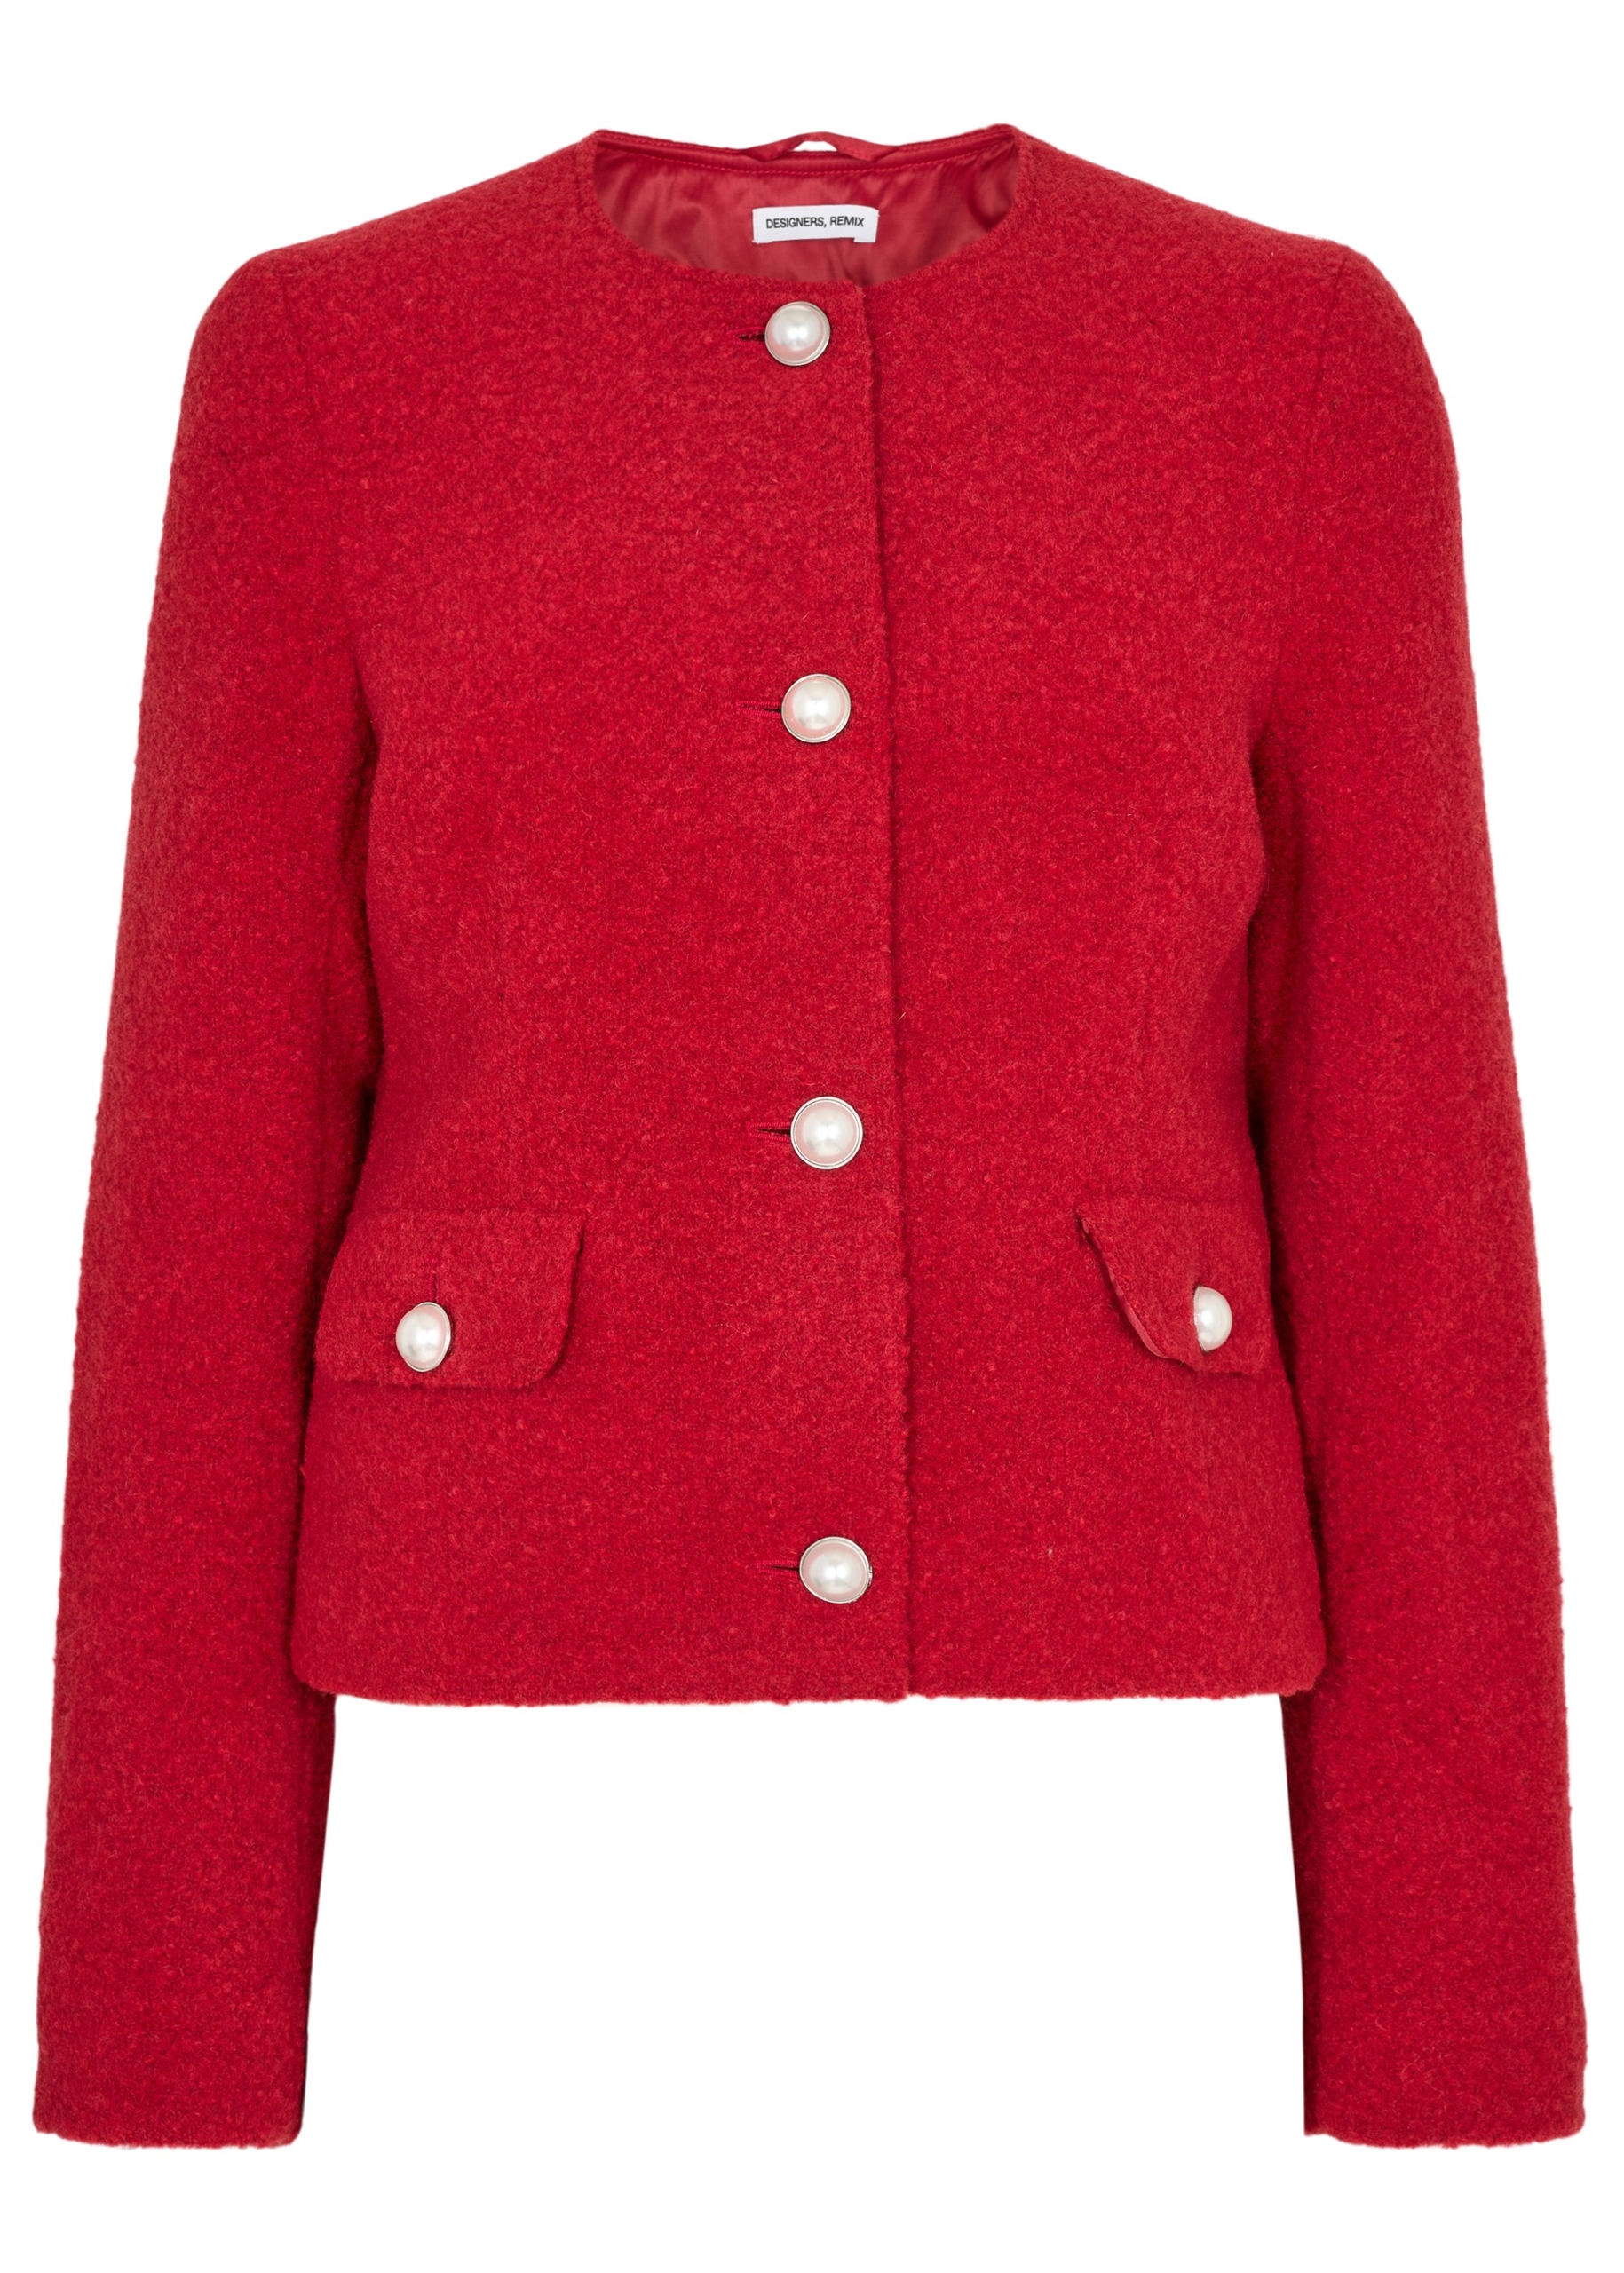 Alaska jacket scarlet red Designers Remix UND